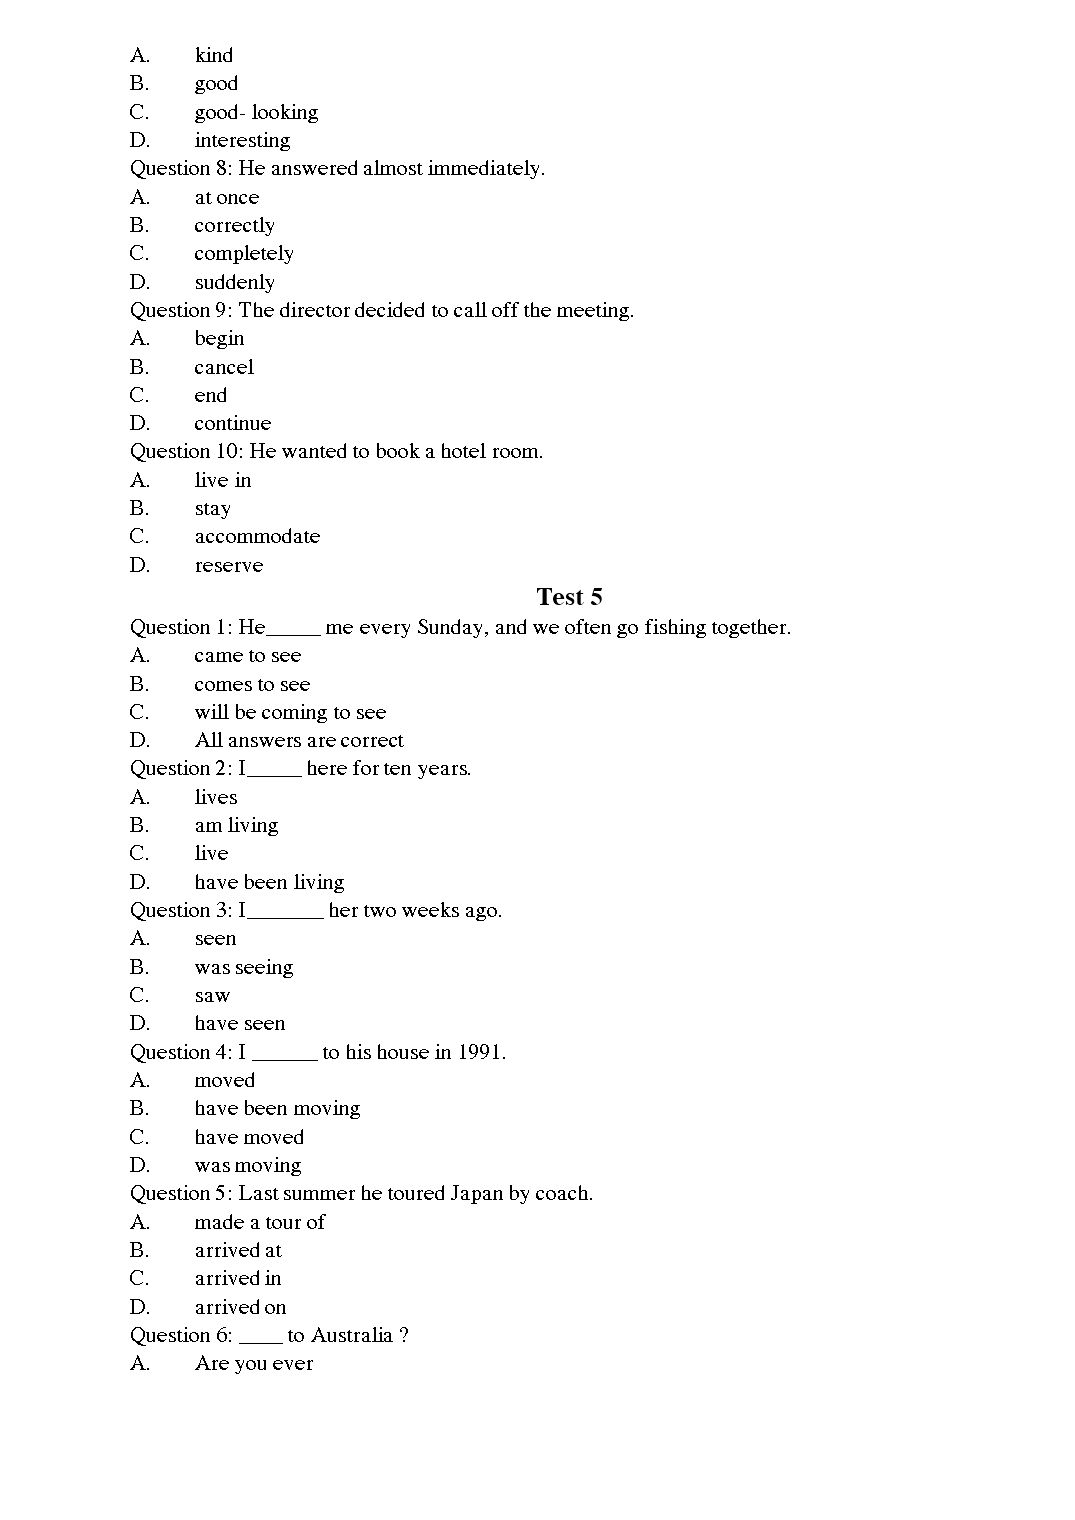 Tiếng Anh - Level A trang 5